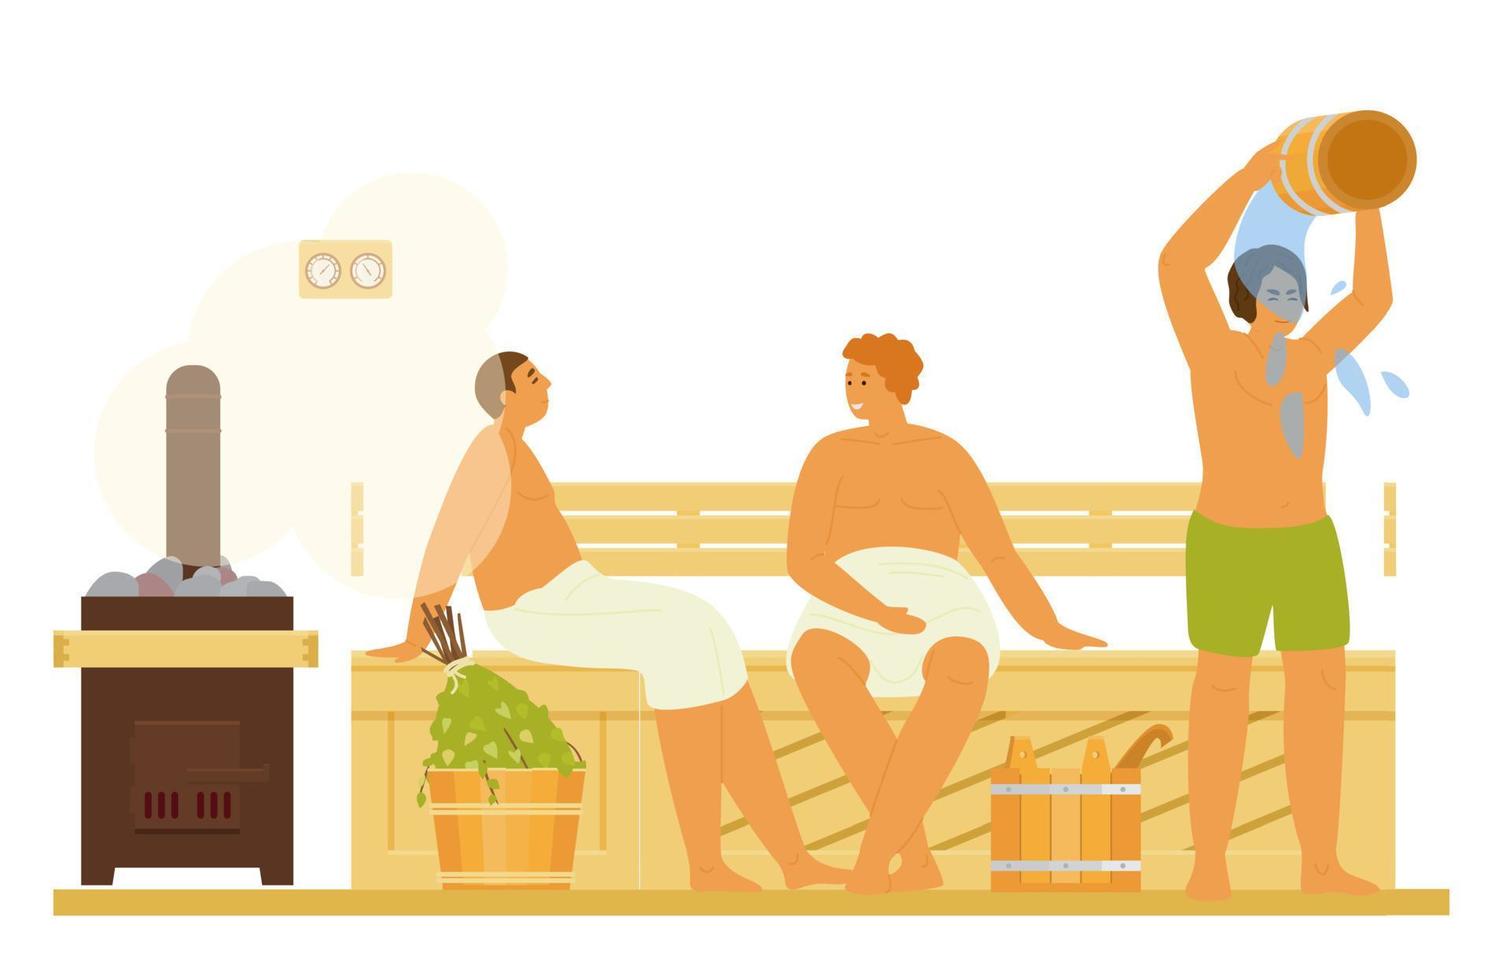 homens relaxando, tomando banho de vapor, encharcando com água na sauna ou banya. atividade saudável. ilustração plana. vetor